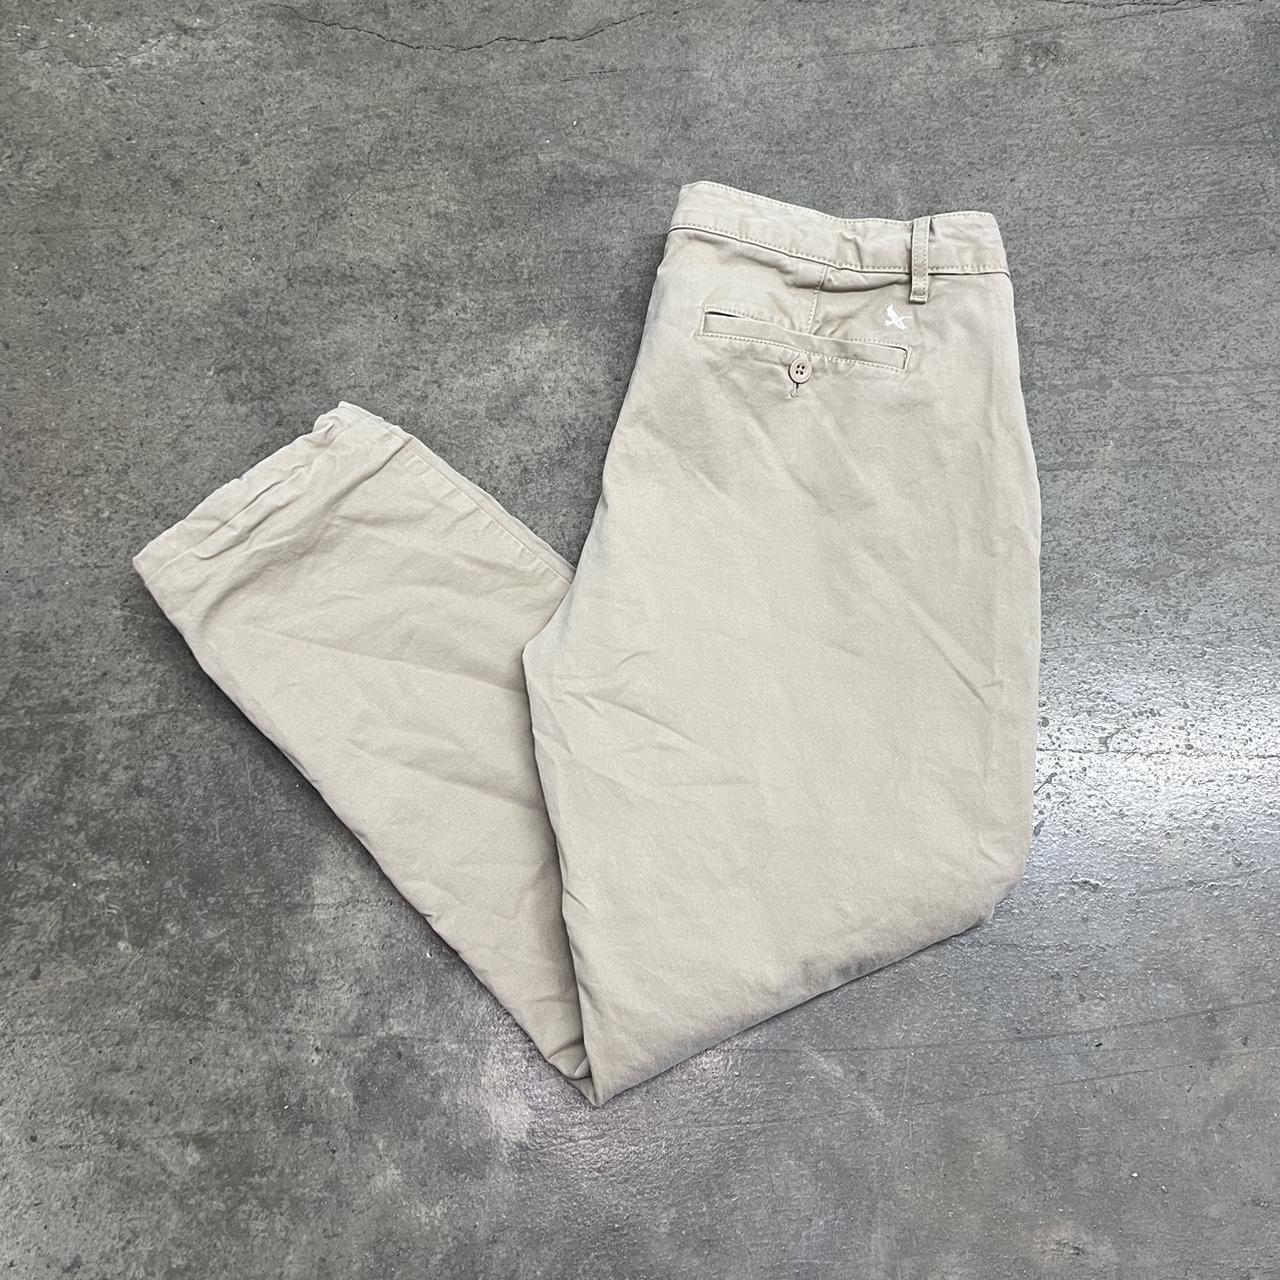 EDDIE BAUER Flannel Lined Pants Sz P14 Legend Wash - Depop